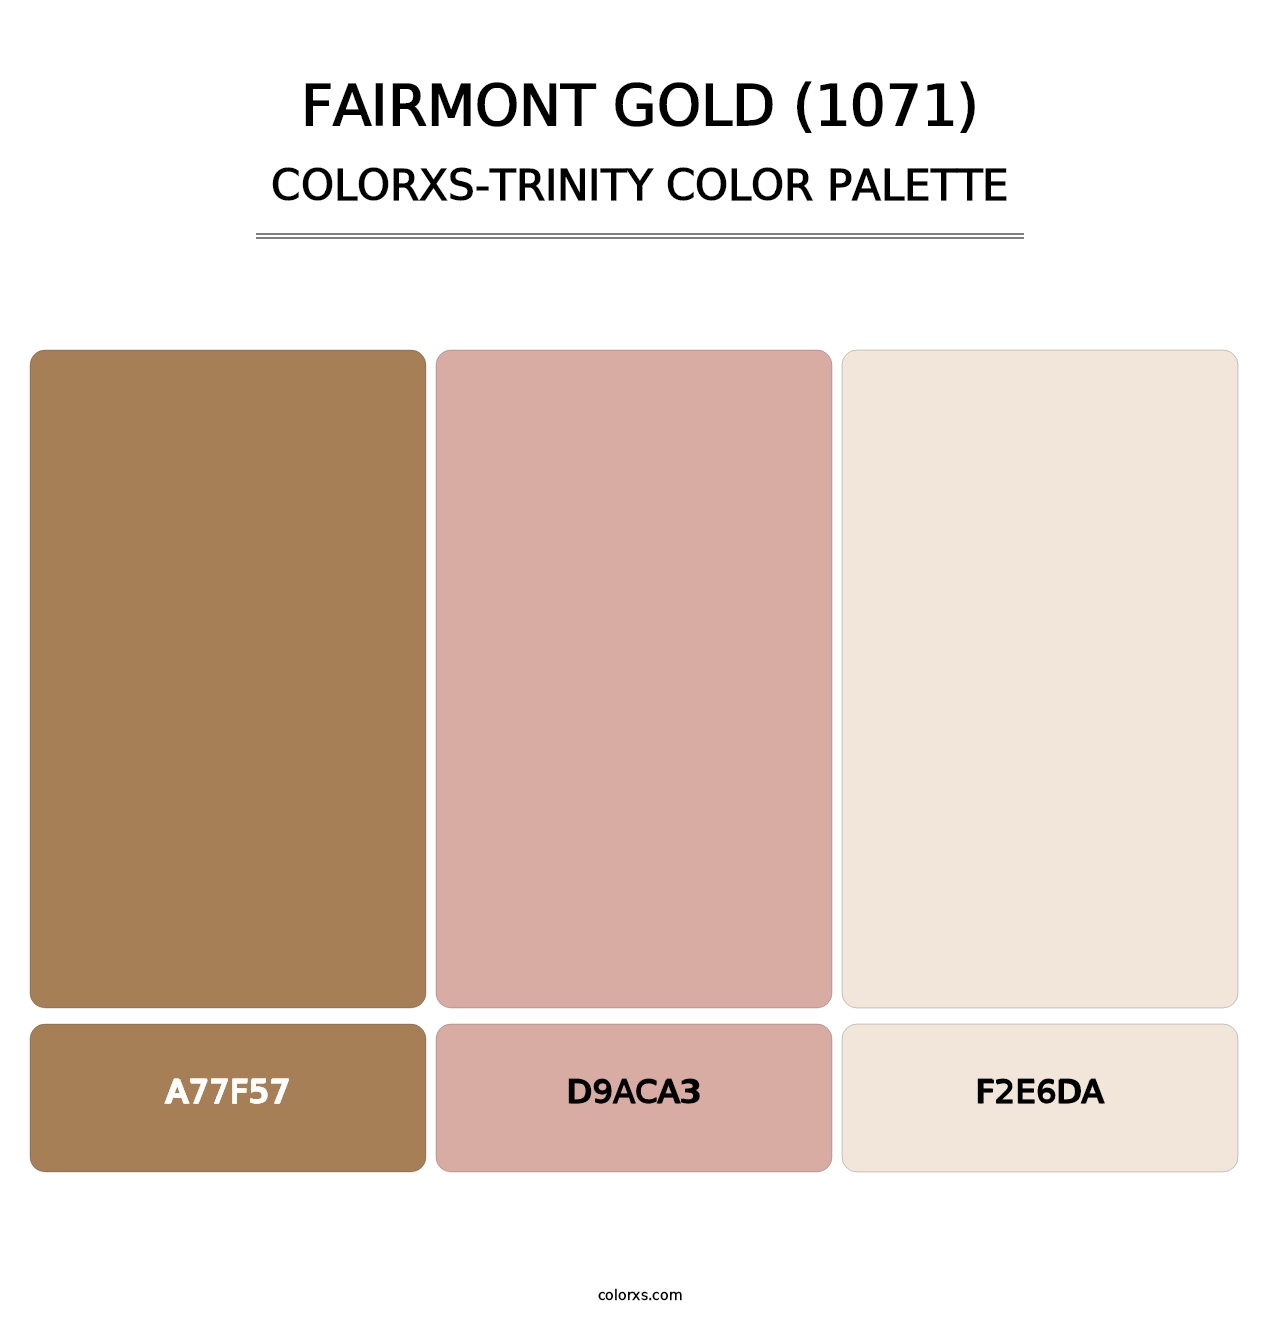 Fairmont Gold (1071) - Colorxs Trinity Palette